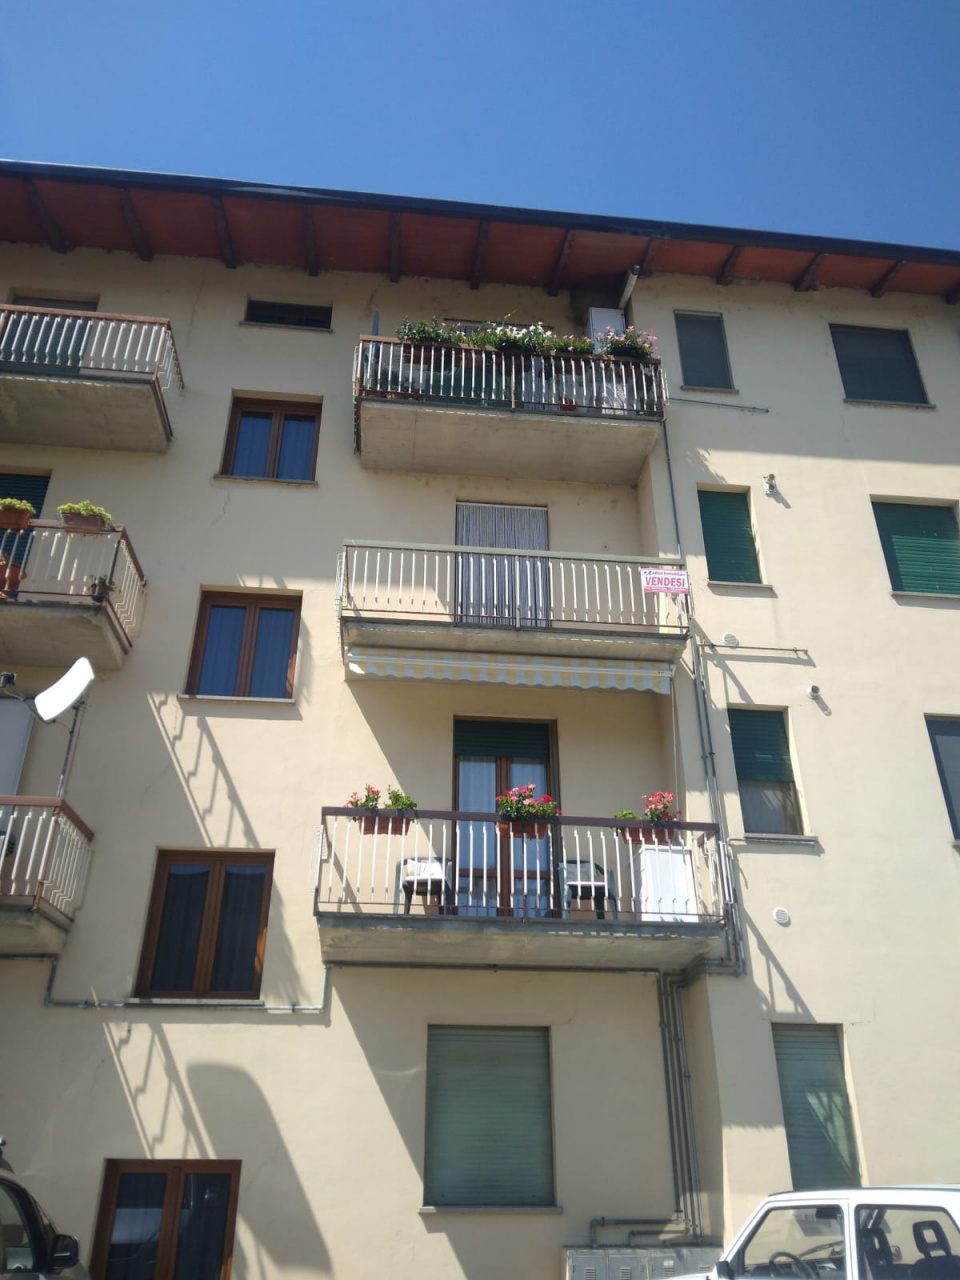 Appartamento in vendita a Bibbiena, 5 locali, prezzo € 115.000 | PortaleAgenzieImmobiliari.it